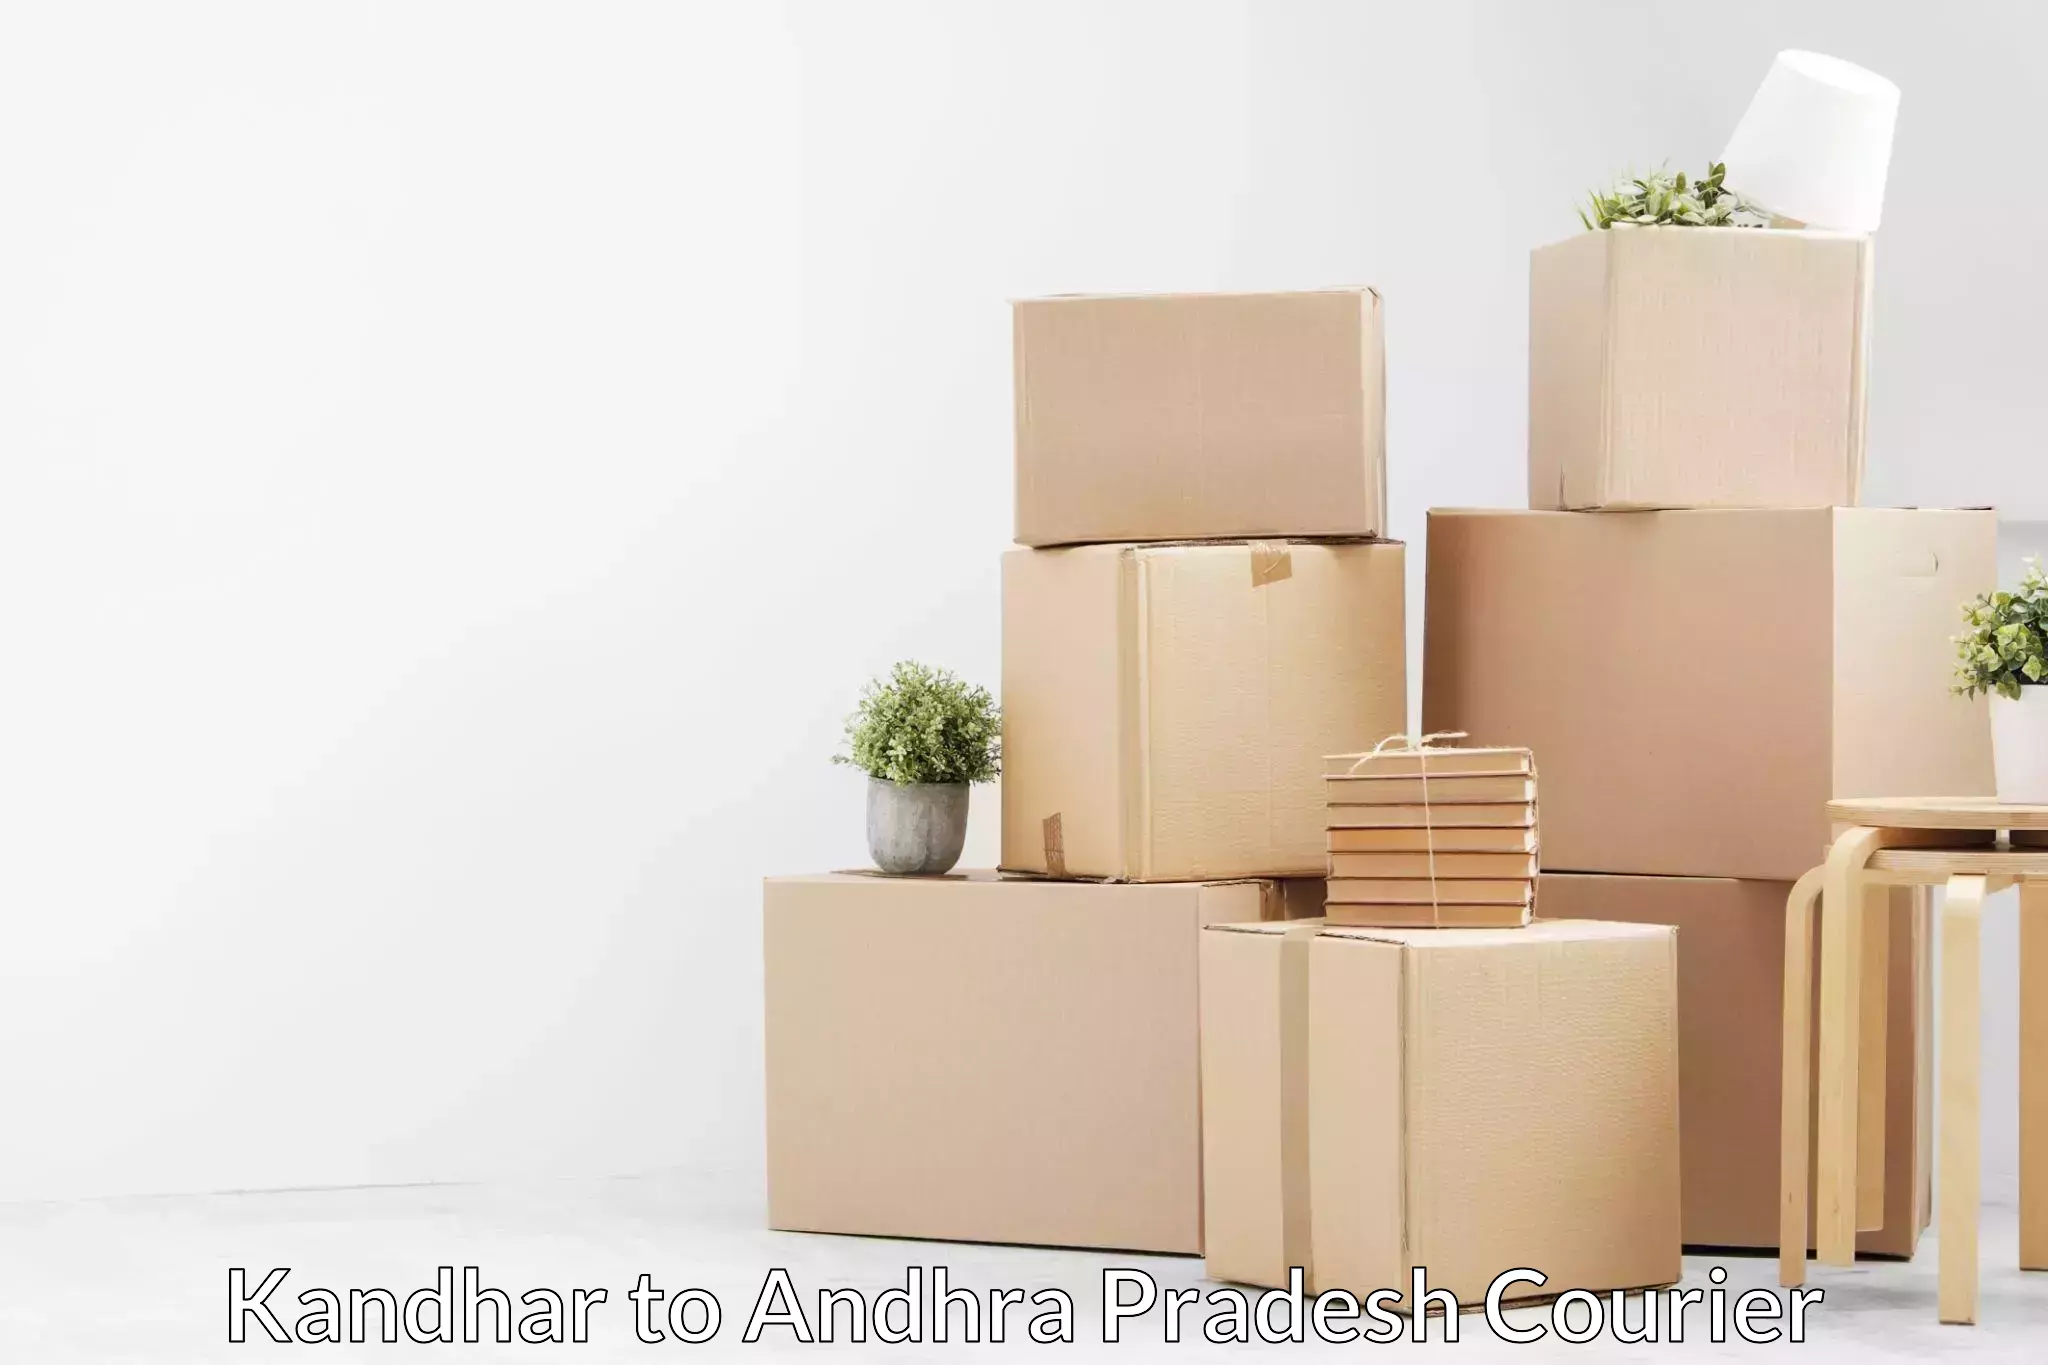 Professional furniture movers in Kandhar to Andhra Pradesh